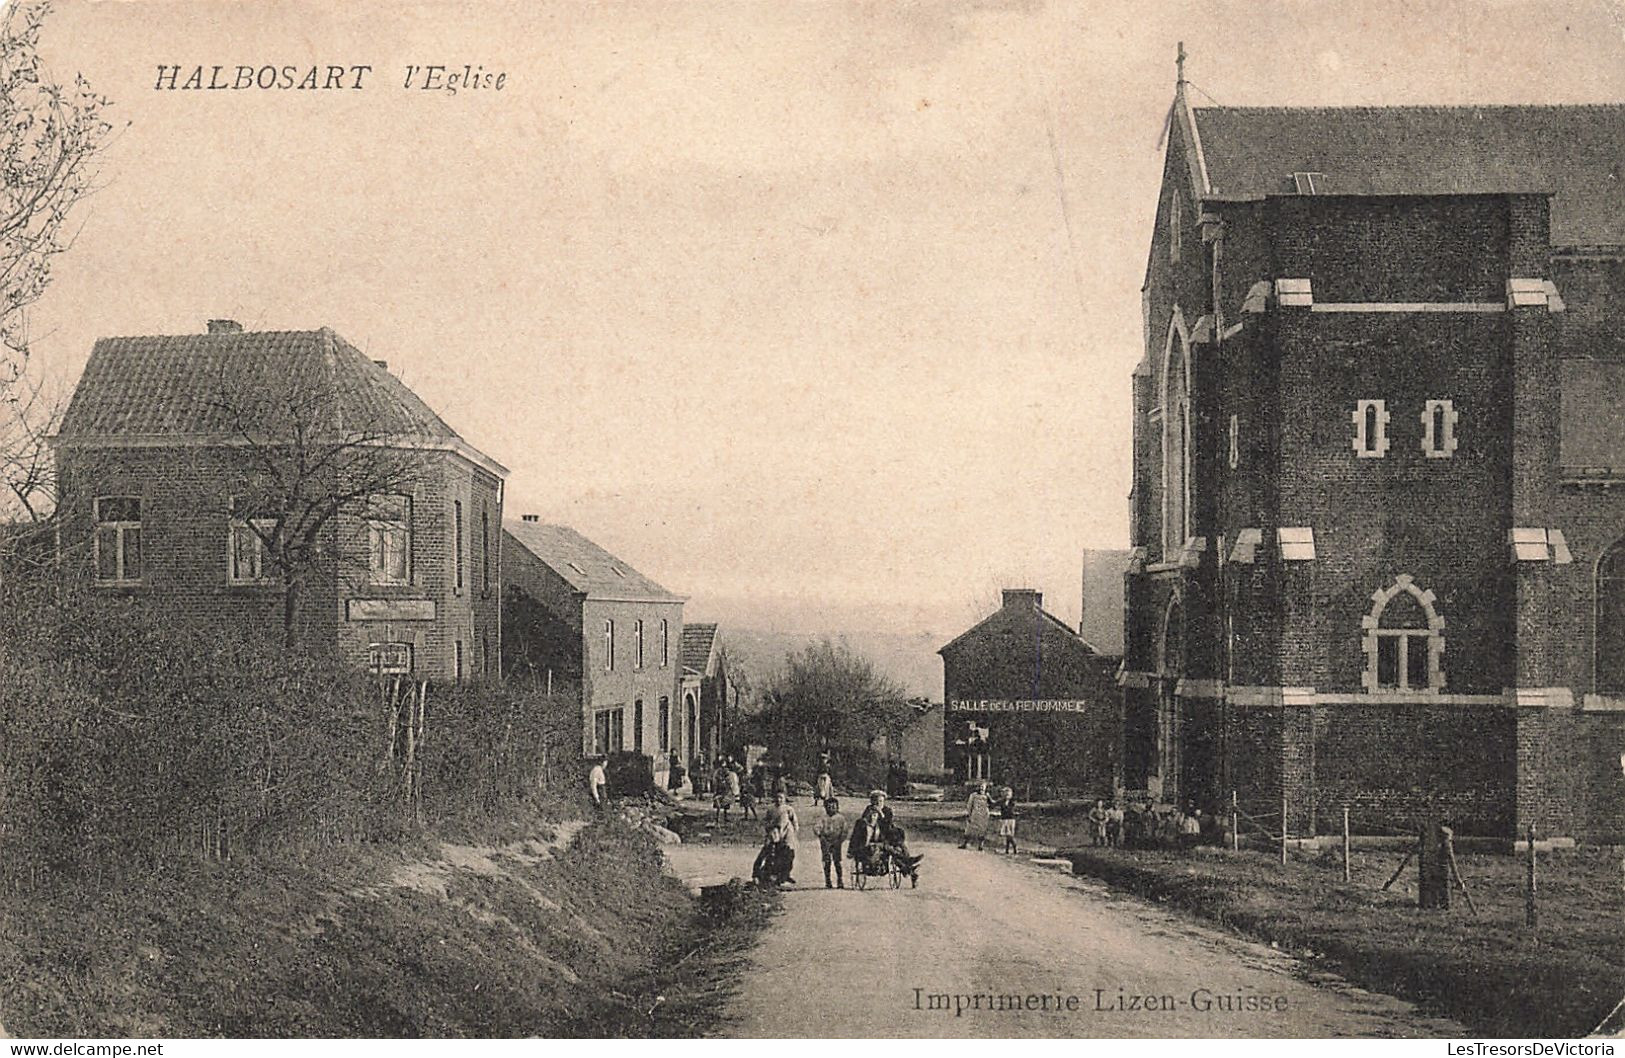 Belgique - Halbosart - L'église - Imp. Lizen Guise - Animé - Salle De La Renomée - Carte Postale Ancienne - Villers-le-Bouillet